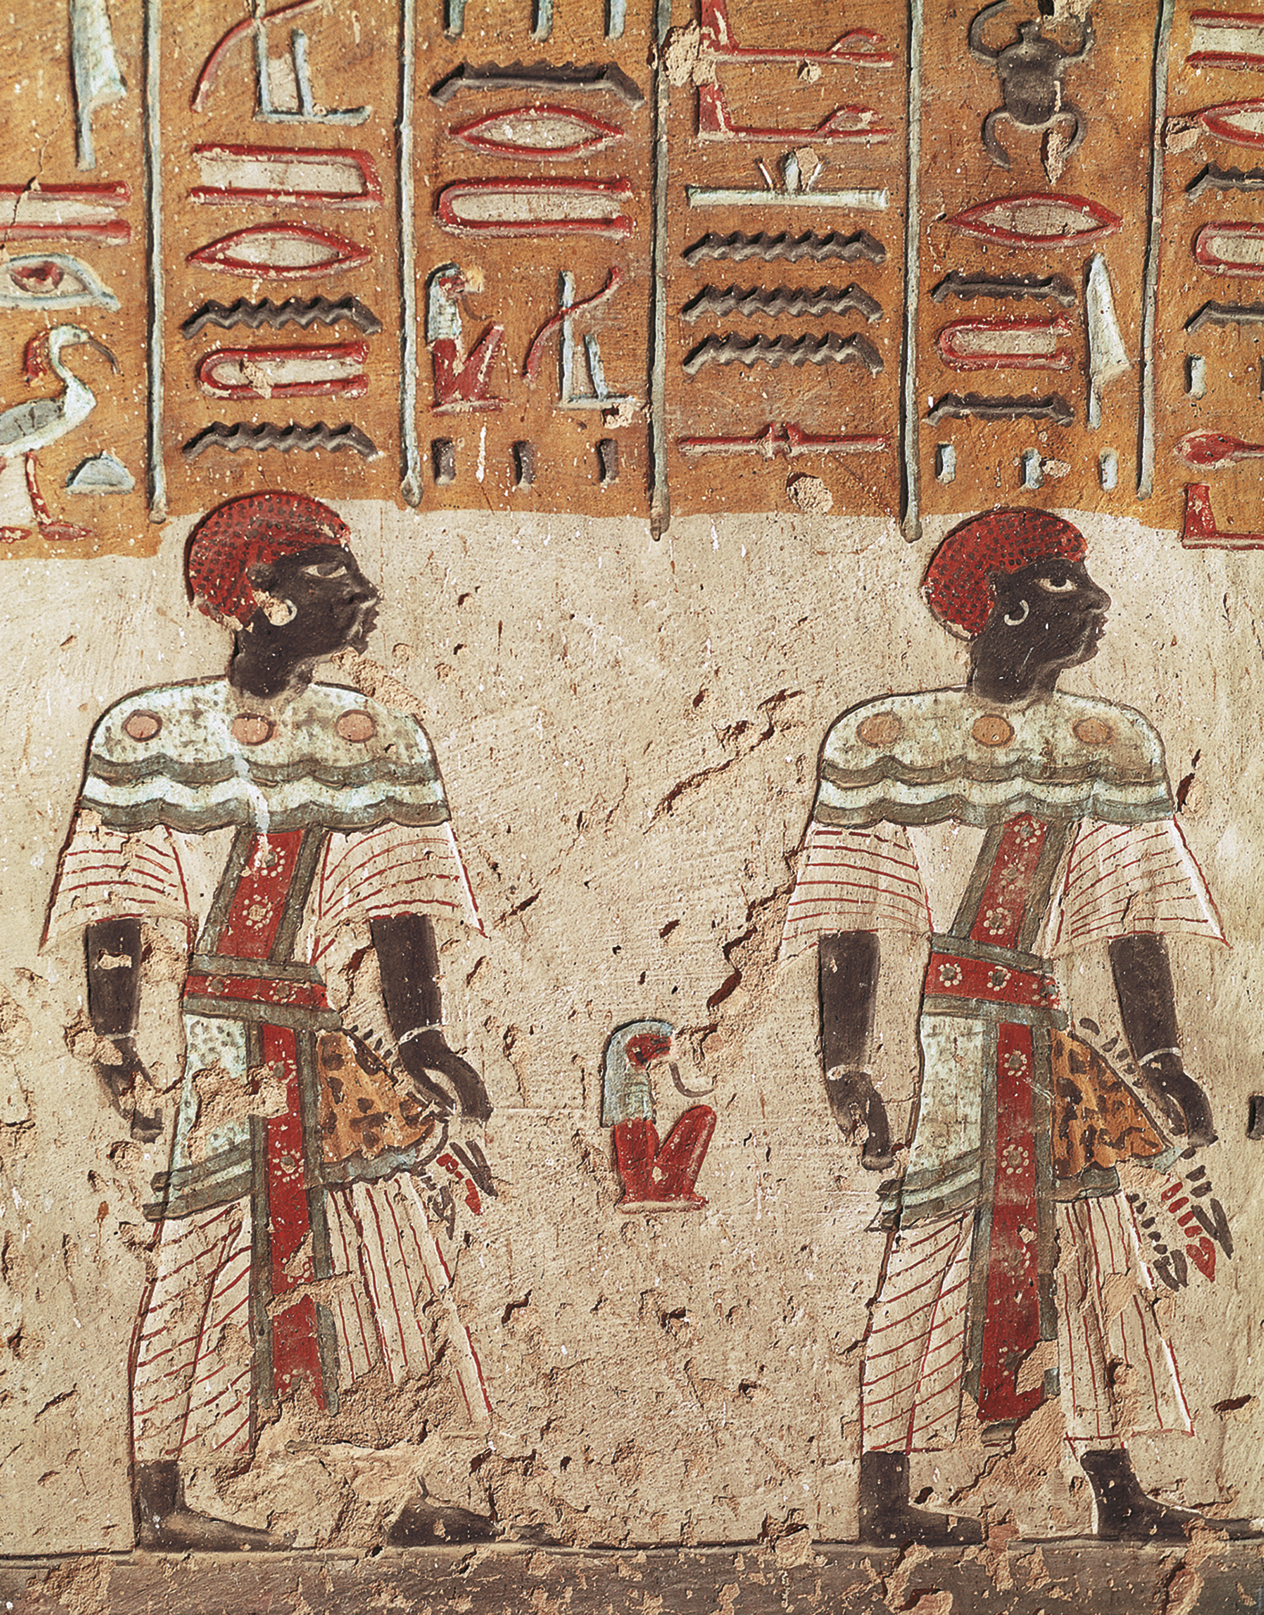 Pintura. Duas pessoas negras com chapéu vermelho, roupas coloridas e estampadas. Atrás, na parede, elementos da escrita egípcia composto por linhas e desenhos coloridos.